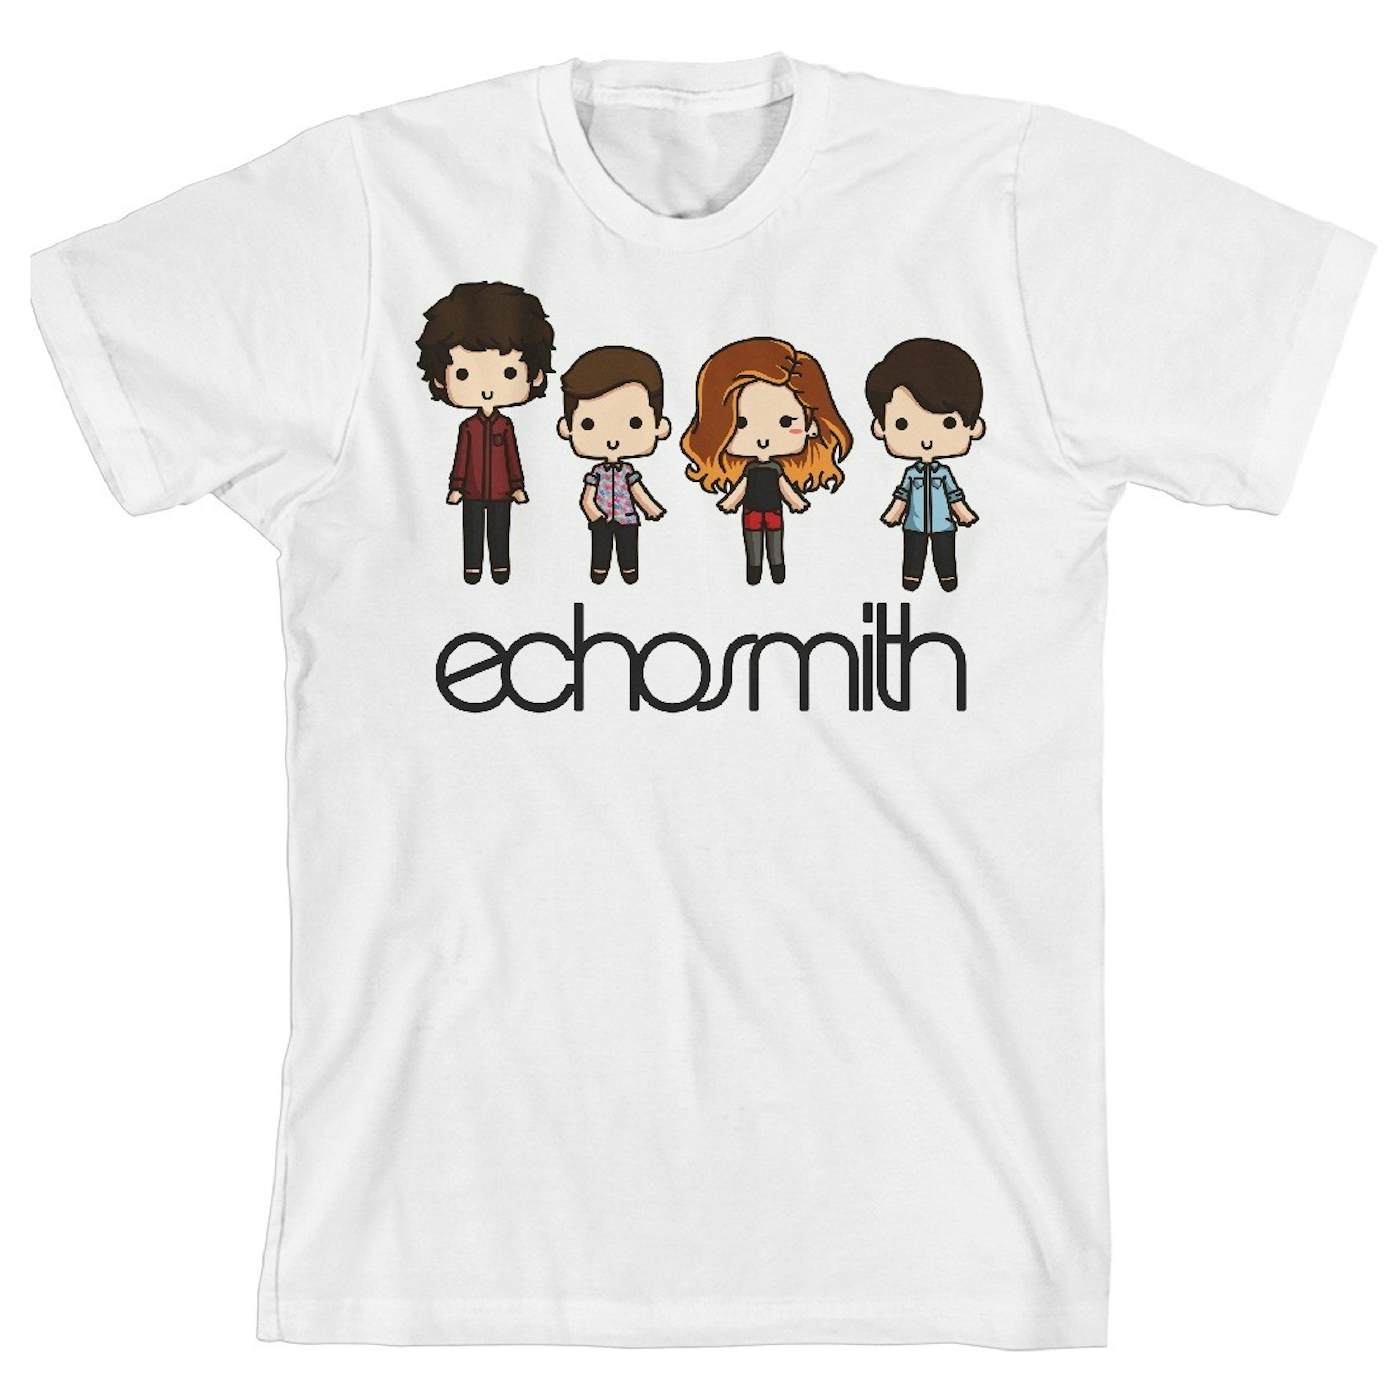 Echosmith Cuties T-Shirt